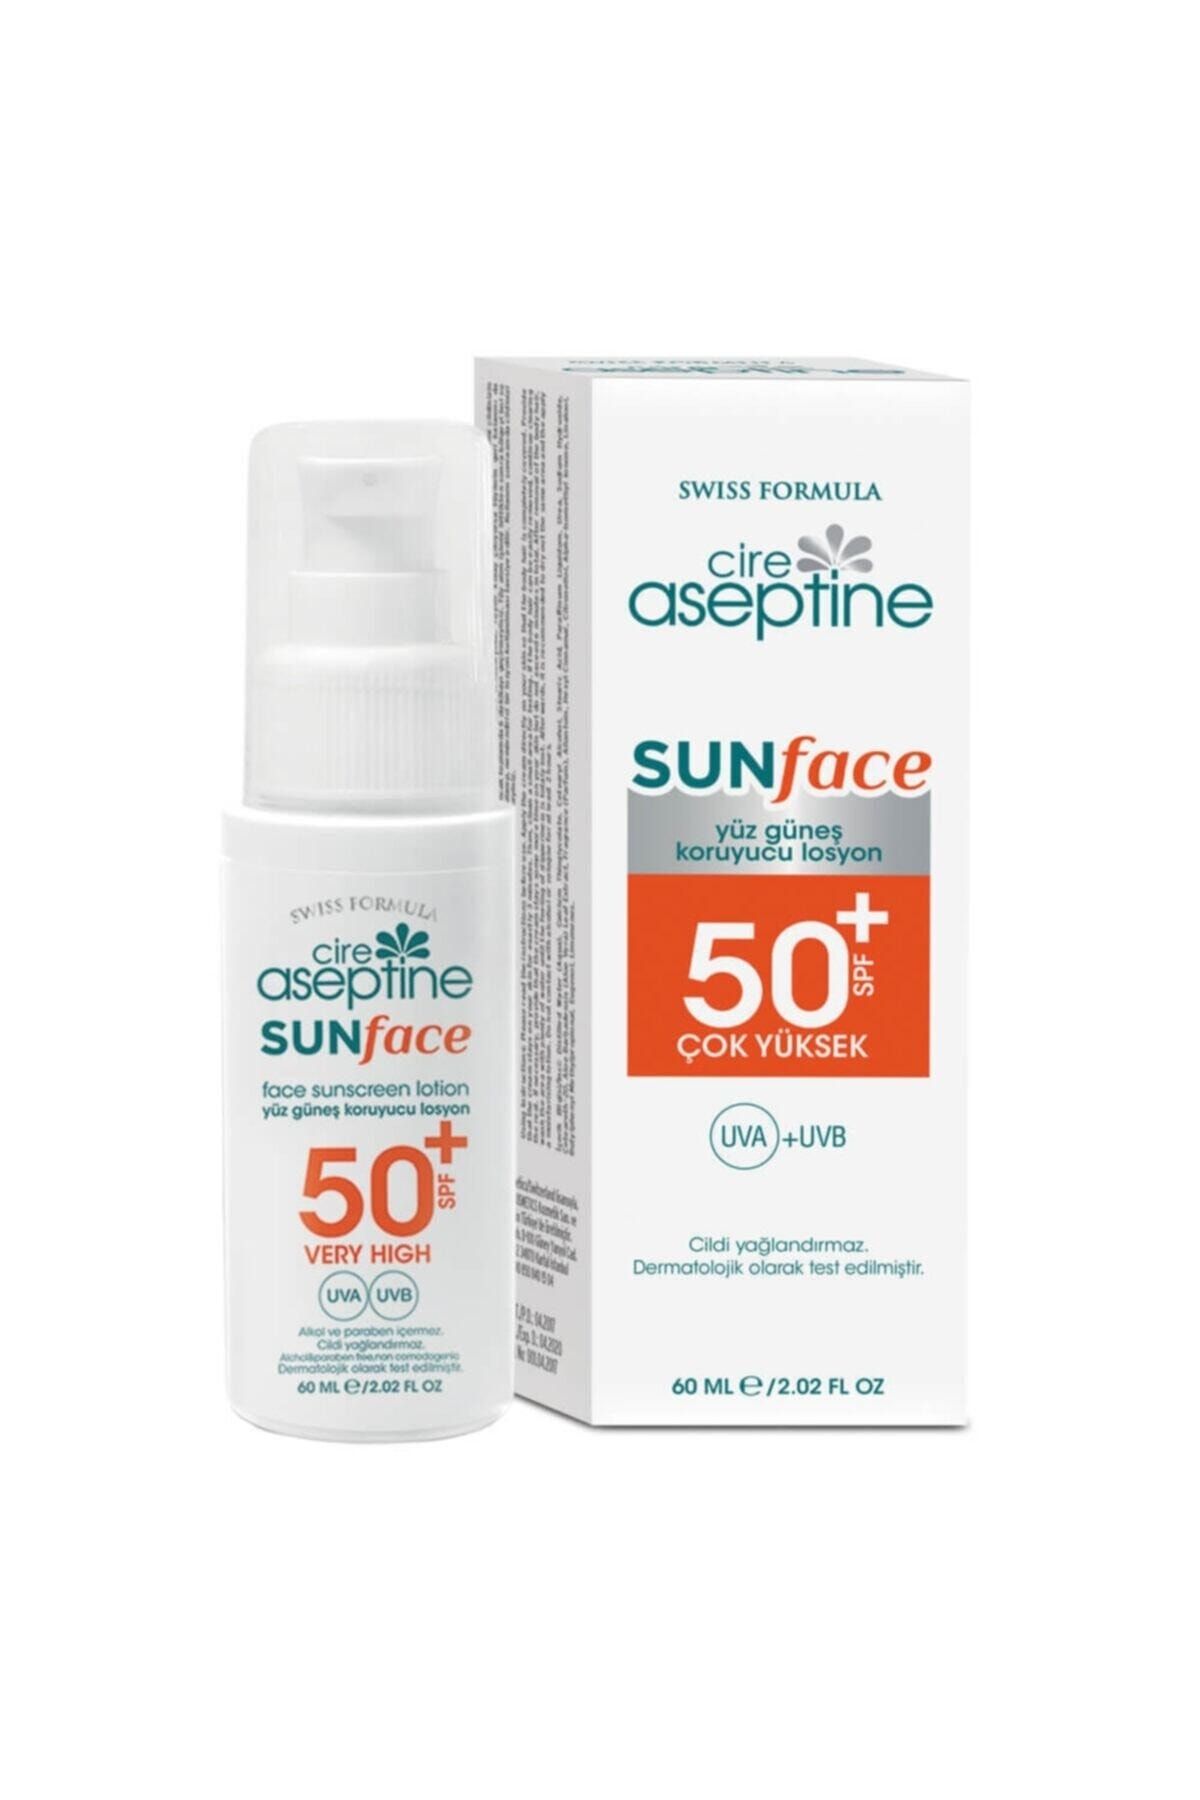 Cire Aseptine Sunface Spf 50+ Yüksek Koruma Uva +Uvb Yüz Güneş Koruyucu Losyon 60 ml